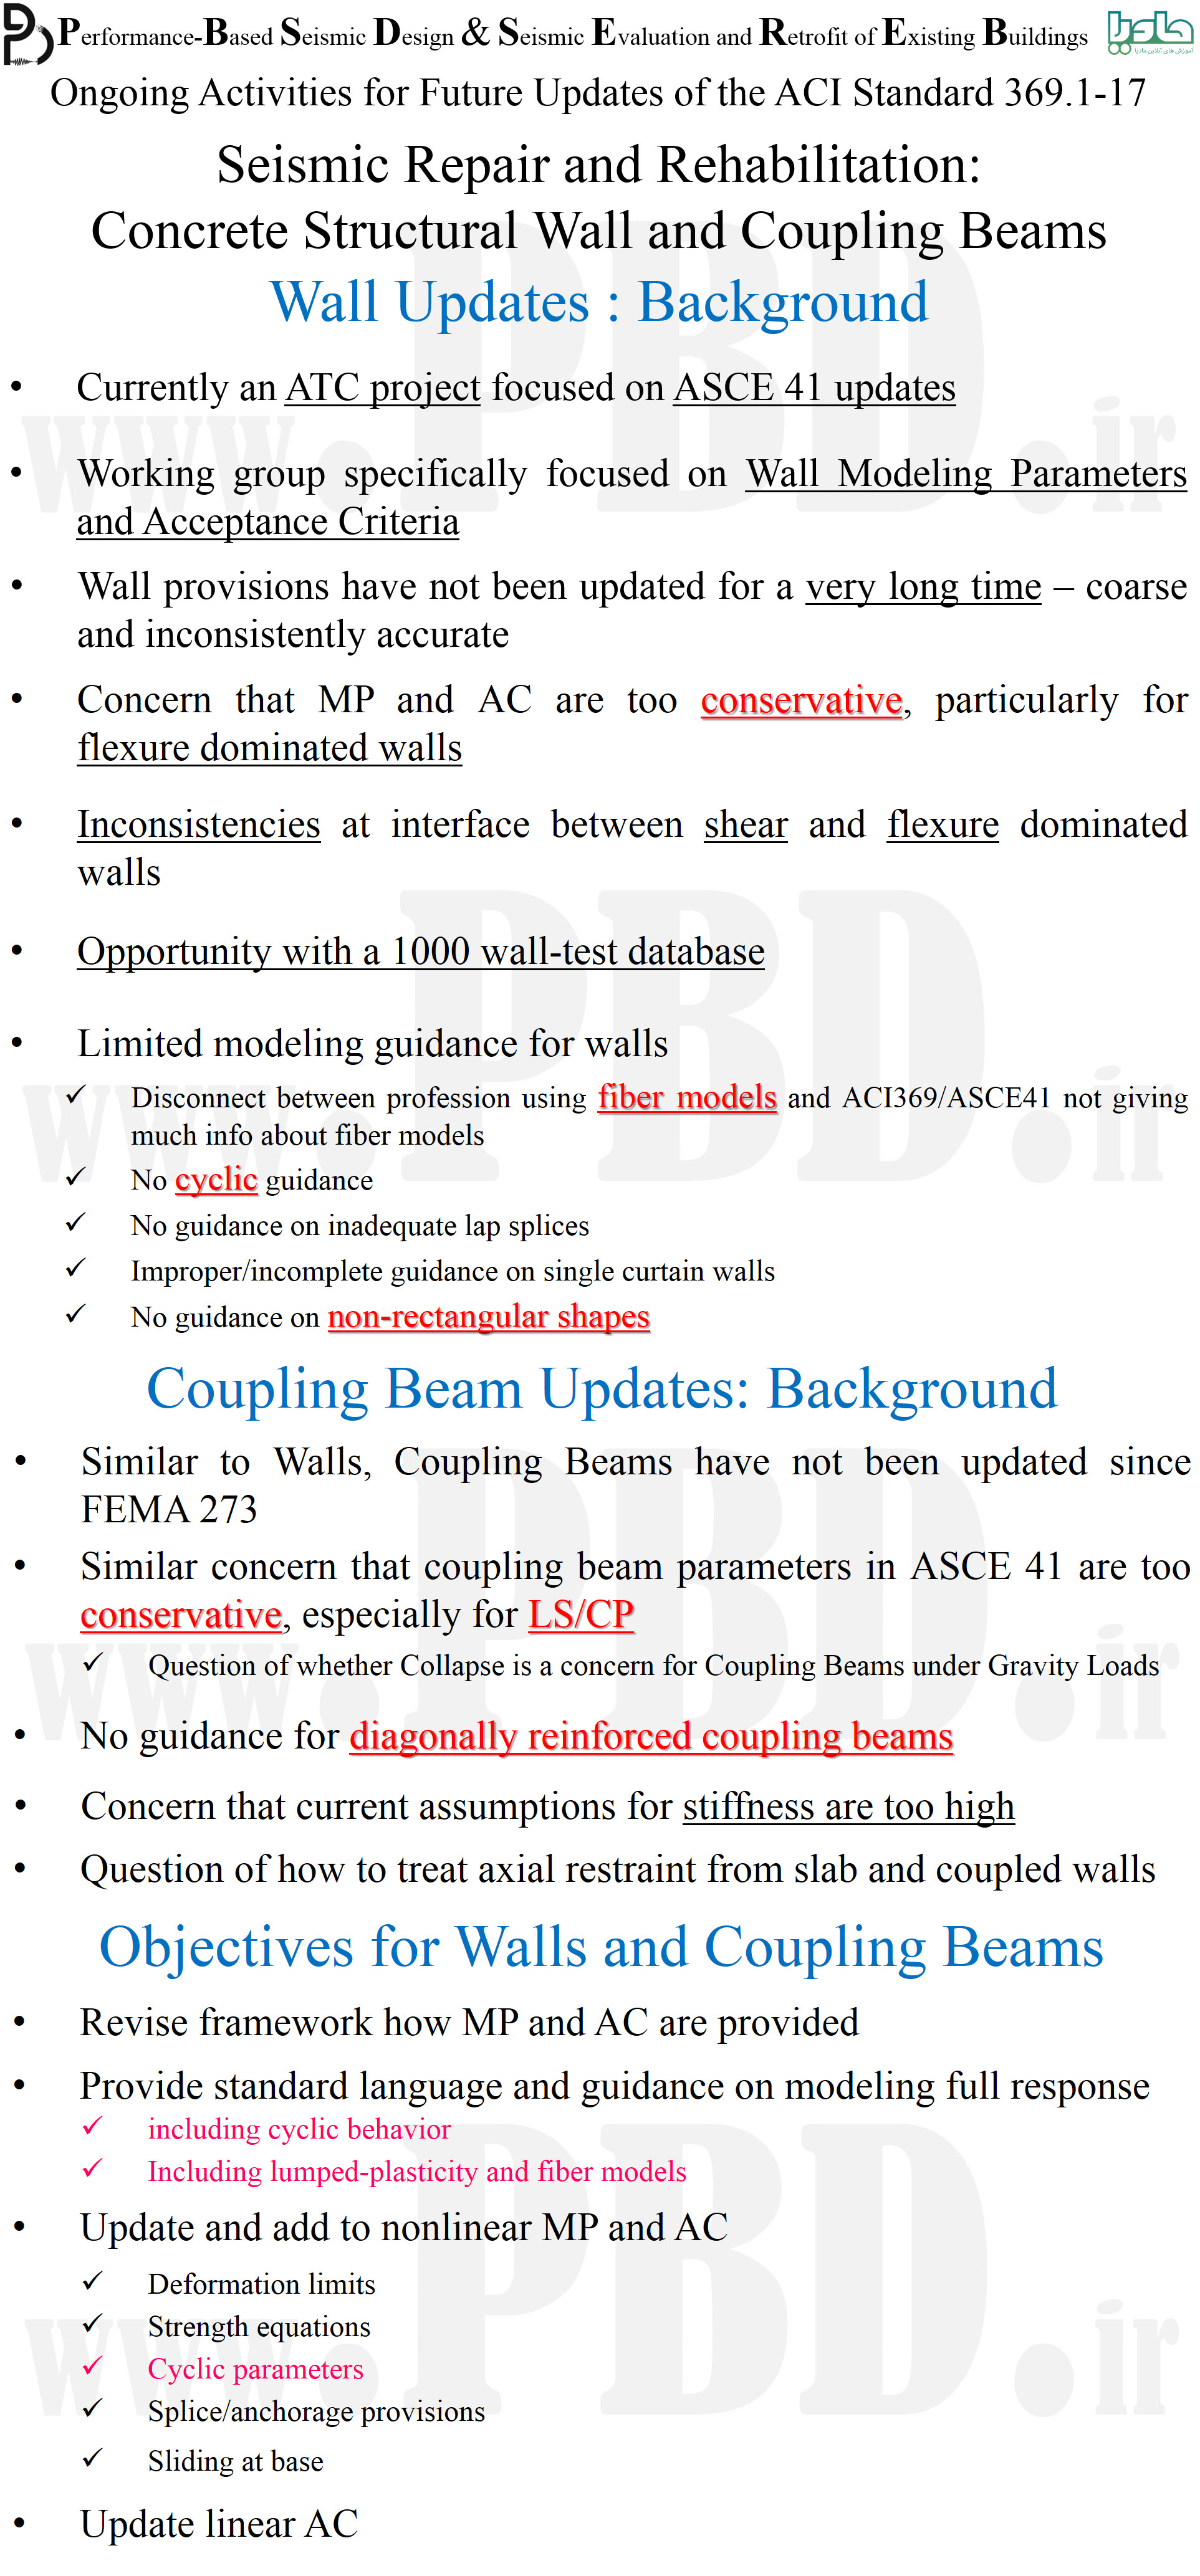 عمده تغییرات پارامترهای مدل سازی و معیارهای پذیرش دیوارهای برشی و تیرهای همبند که در ACI 369 اعمال خواهد شد (ASCE 41-23 , ACI 369.1-21)